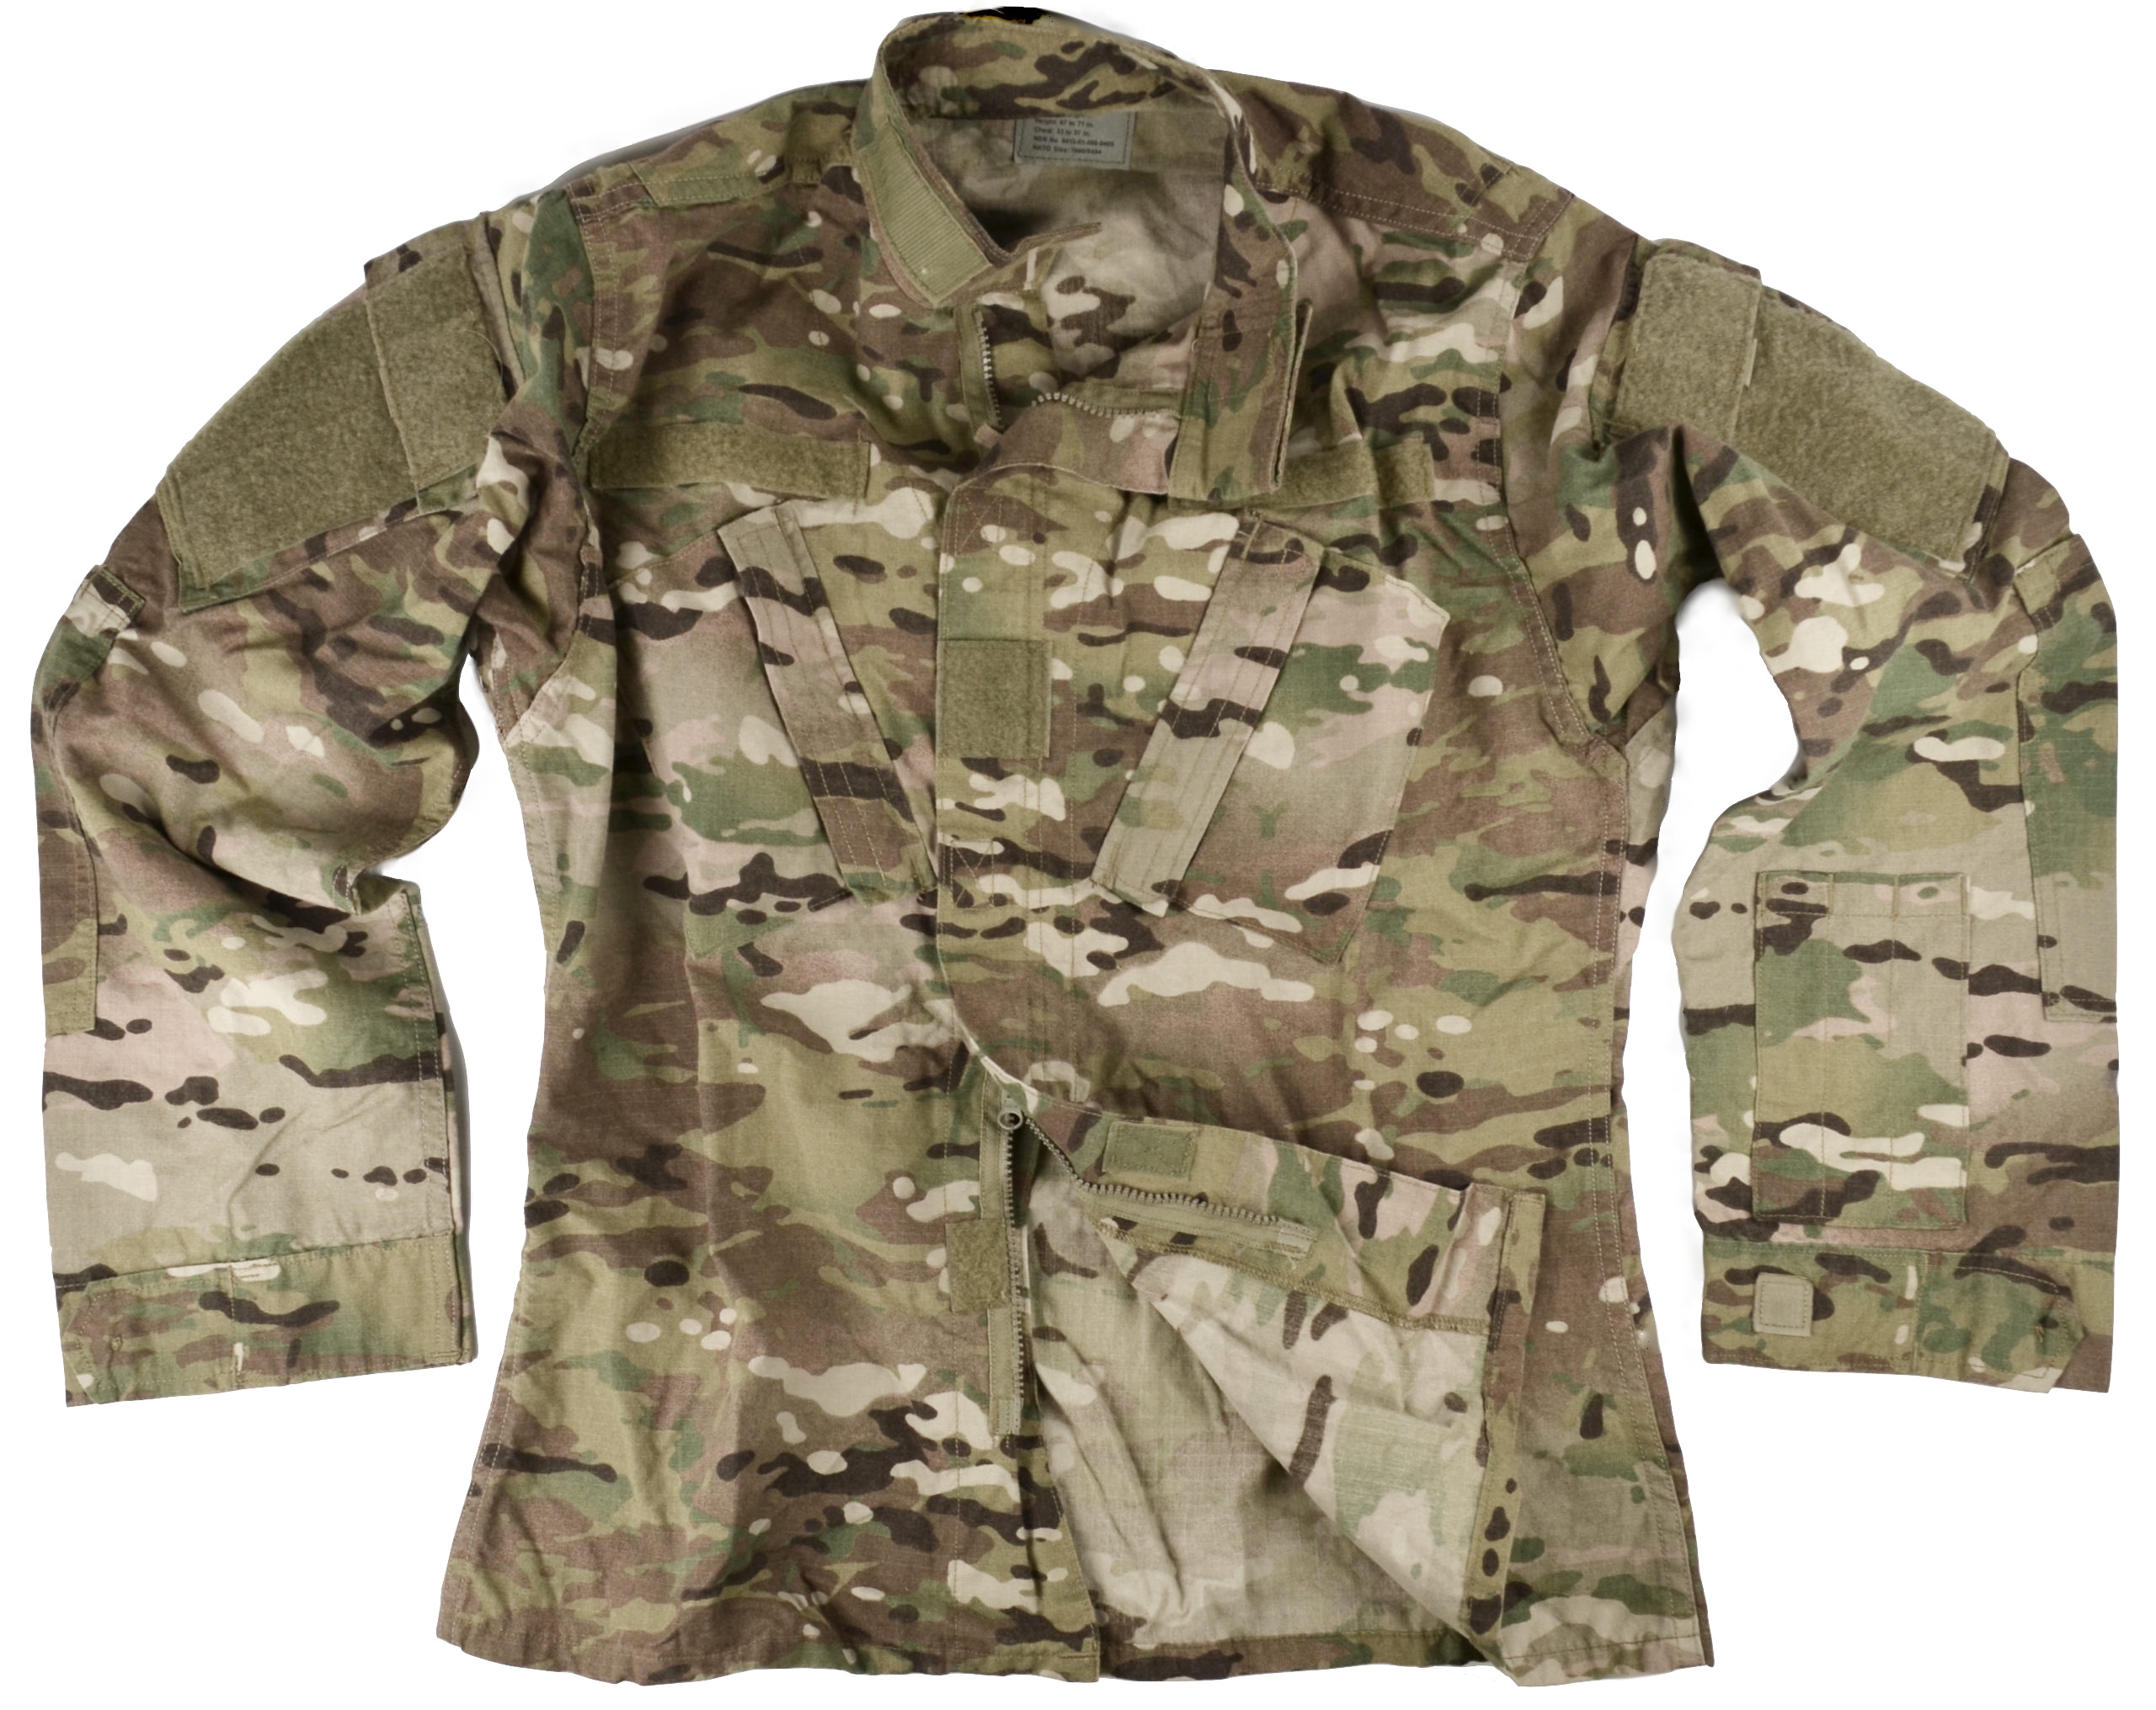 Multicam OCP USGI Army Uniform Flame Resistant FR Shirt